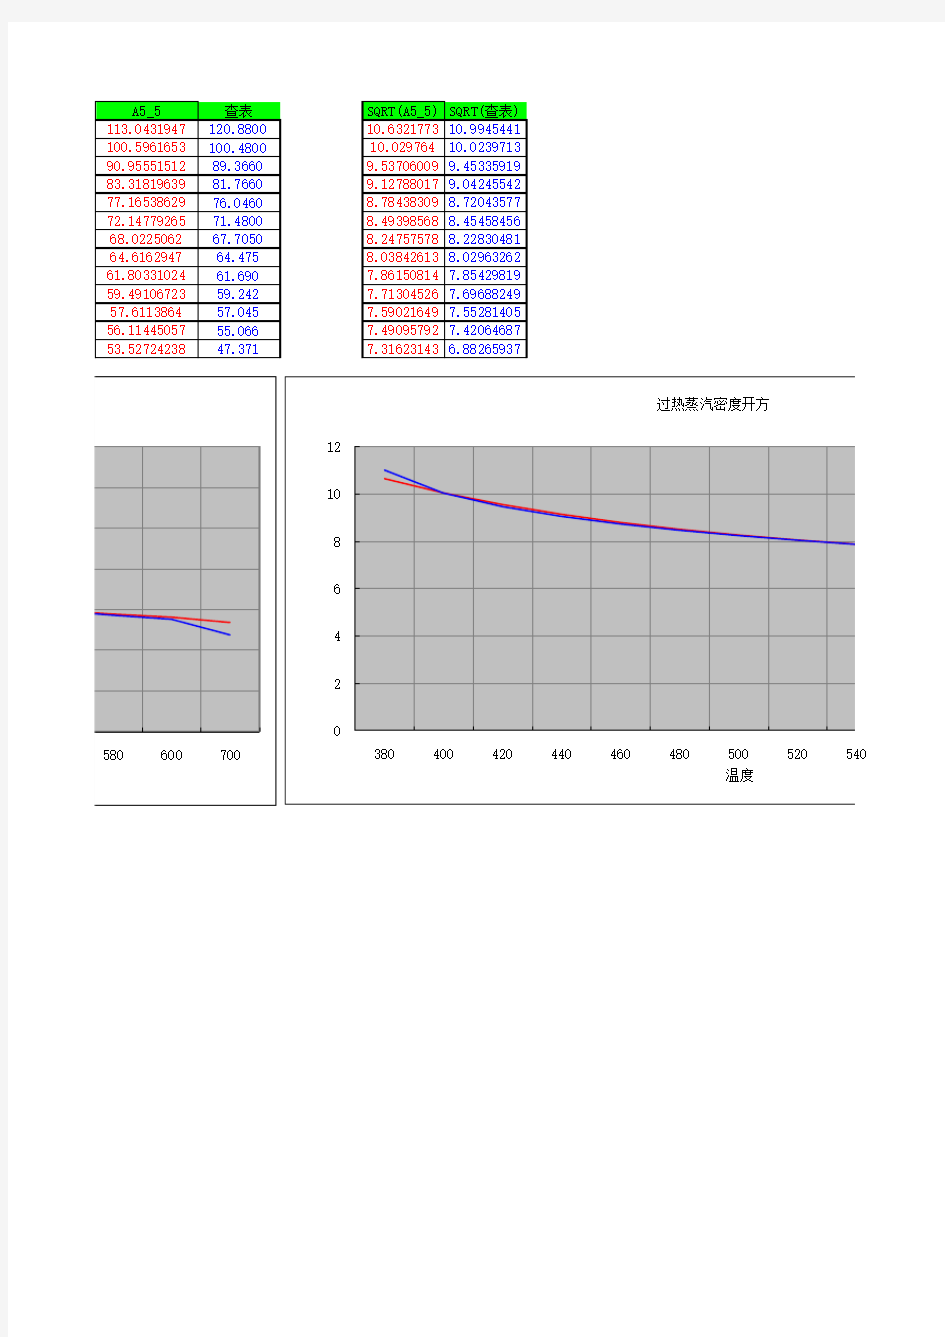 蒸汽密度公式计算与查表对照曲线